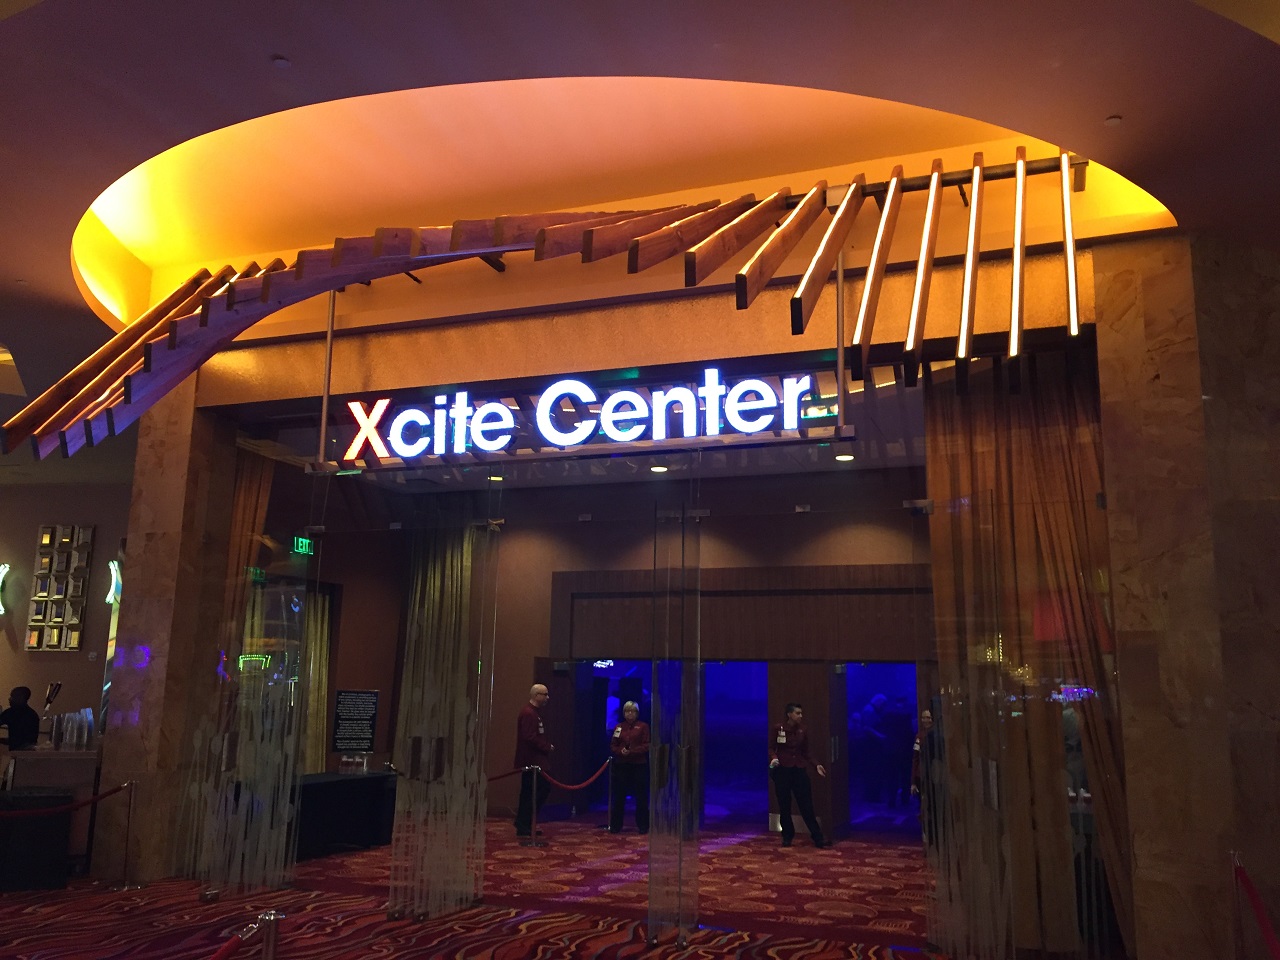 parx casino xcite center phone number